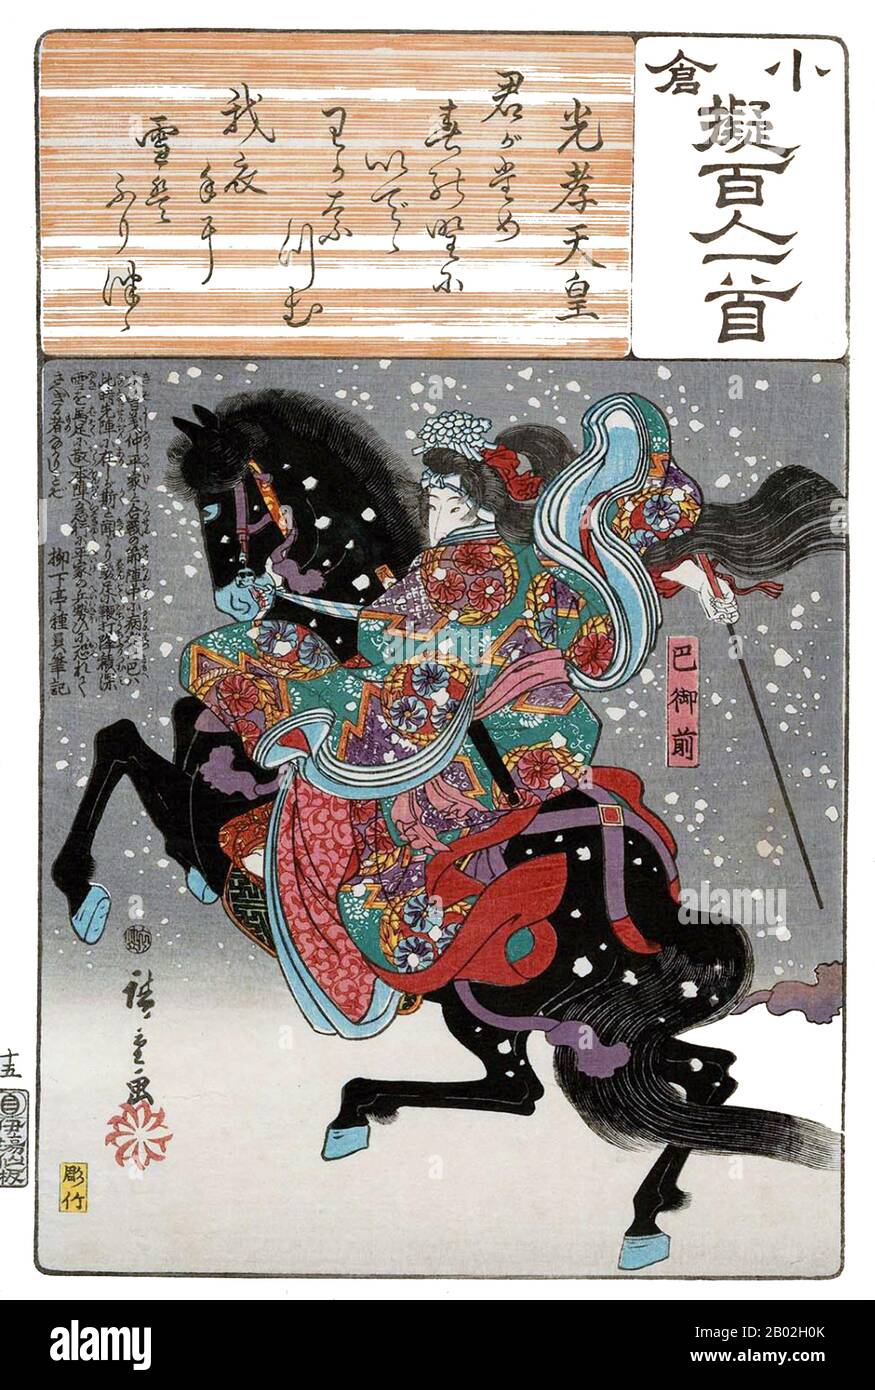 Die berühmten weiblichen Samurai, Tomoe-gozen im 11. Jahrhundert. Ihr Ehemann oder ihre Liebe war der Genji-General Kiso Yoshinaka. Laut "The Tale of Heike" war Tomoe besonders schön, mit weißer Haut, langen Haaren und charmanten Merkmalen. Sie war auch eine bemerkenswert starke Bogenschützin, und als Schwerterfrau war sie eine Kämpferin im Wert von tausend, bereit, einem Dämon oder Gott entgegenzutreten, montiert oder zu Fuß. Sie bewältigte ungebrochene Pferde mit überragendem Geschick; sie ritt unbeschadet von unheilvollen Abfahrten. Wann immer eine Schlacht bevorstand, schickte Yoshinaka sie als seinen ersten Kapitän, ausgestattet mit starker Rüstung, ein Over aus Stockfoto